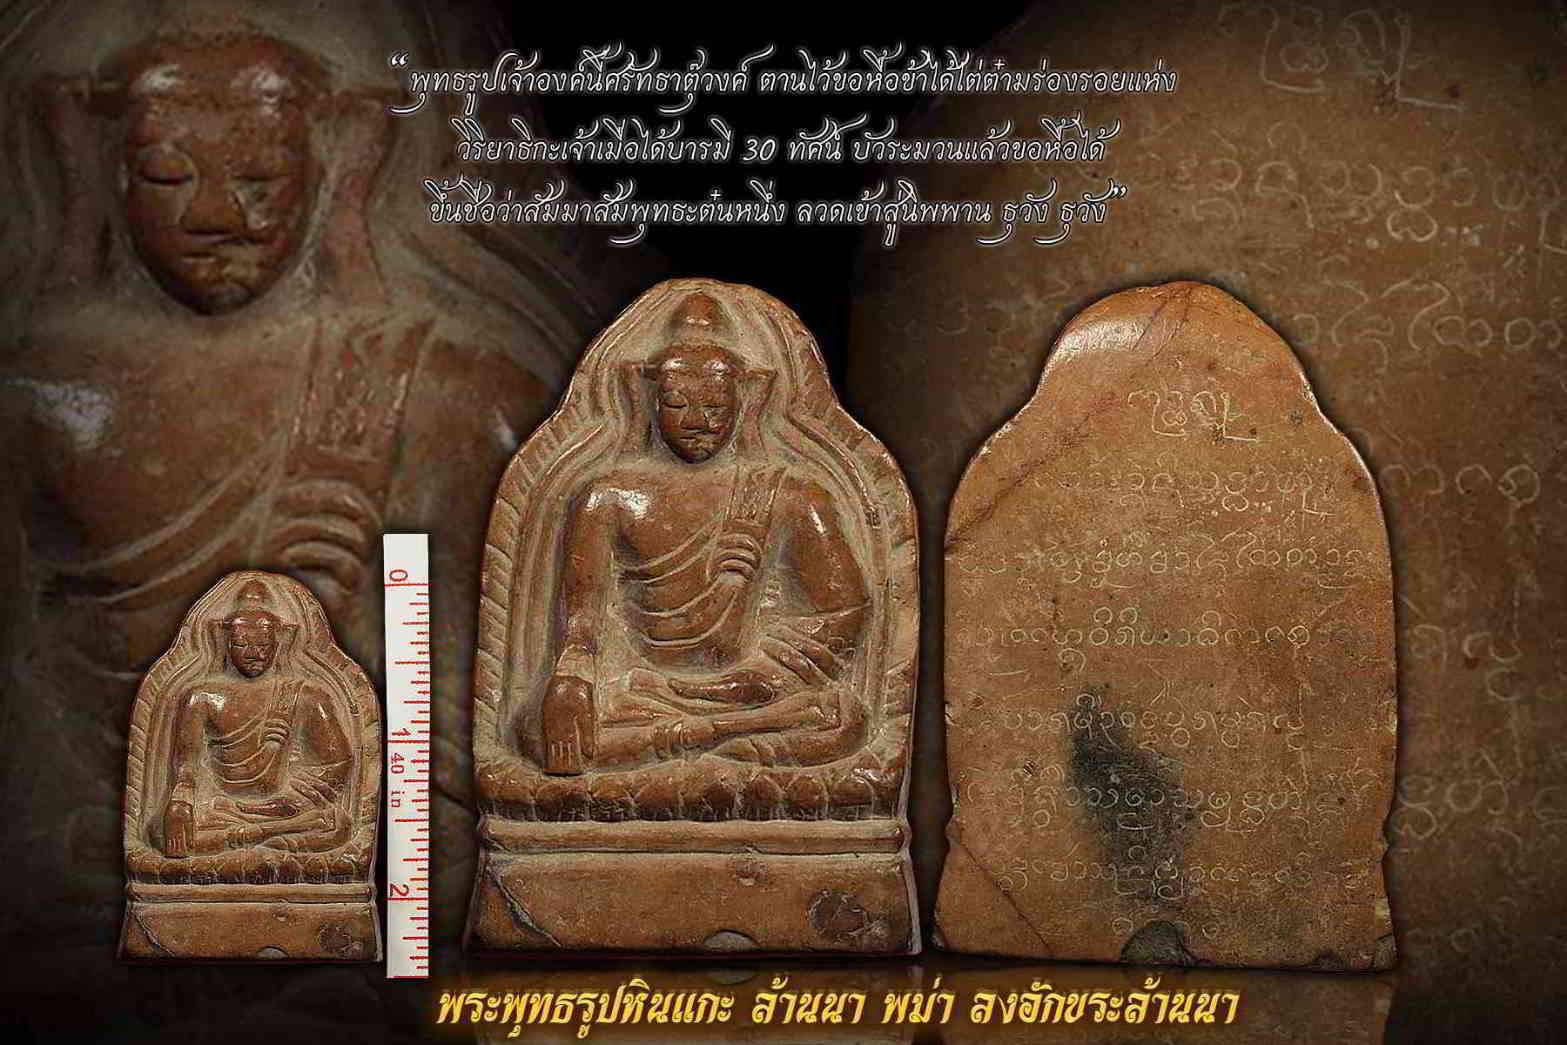 พระพุทธรูปหินแกะล้านนา-พม่า มีจารึกโบราณ